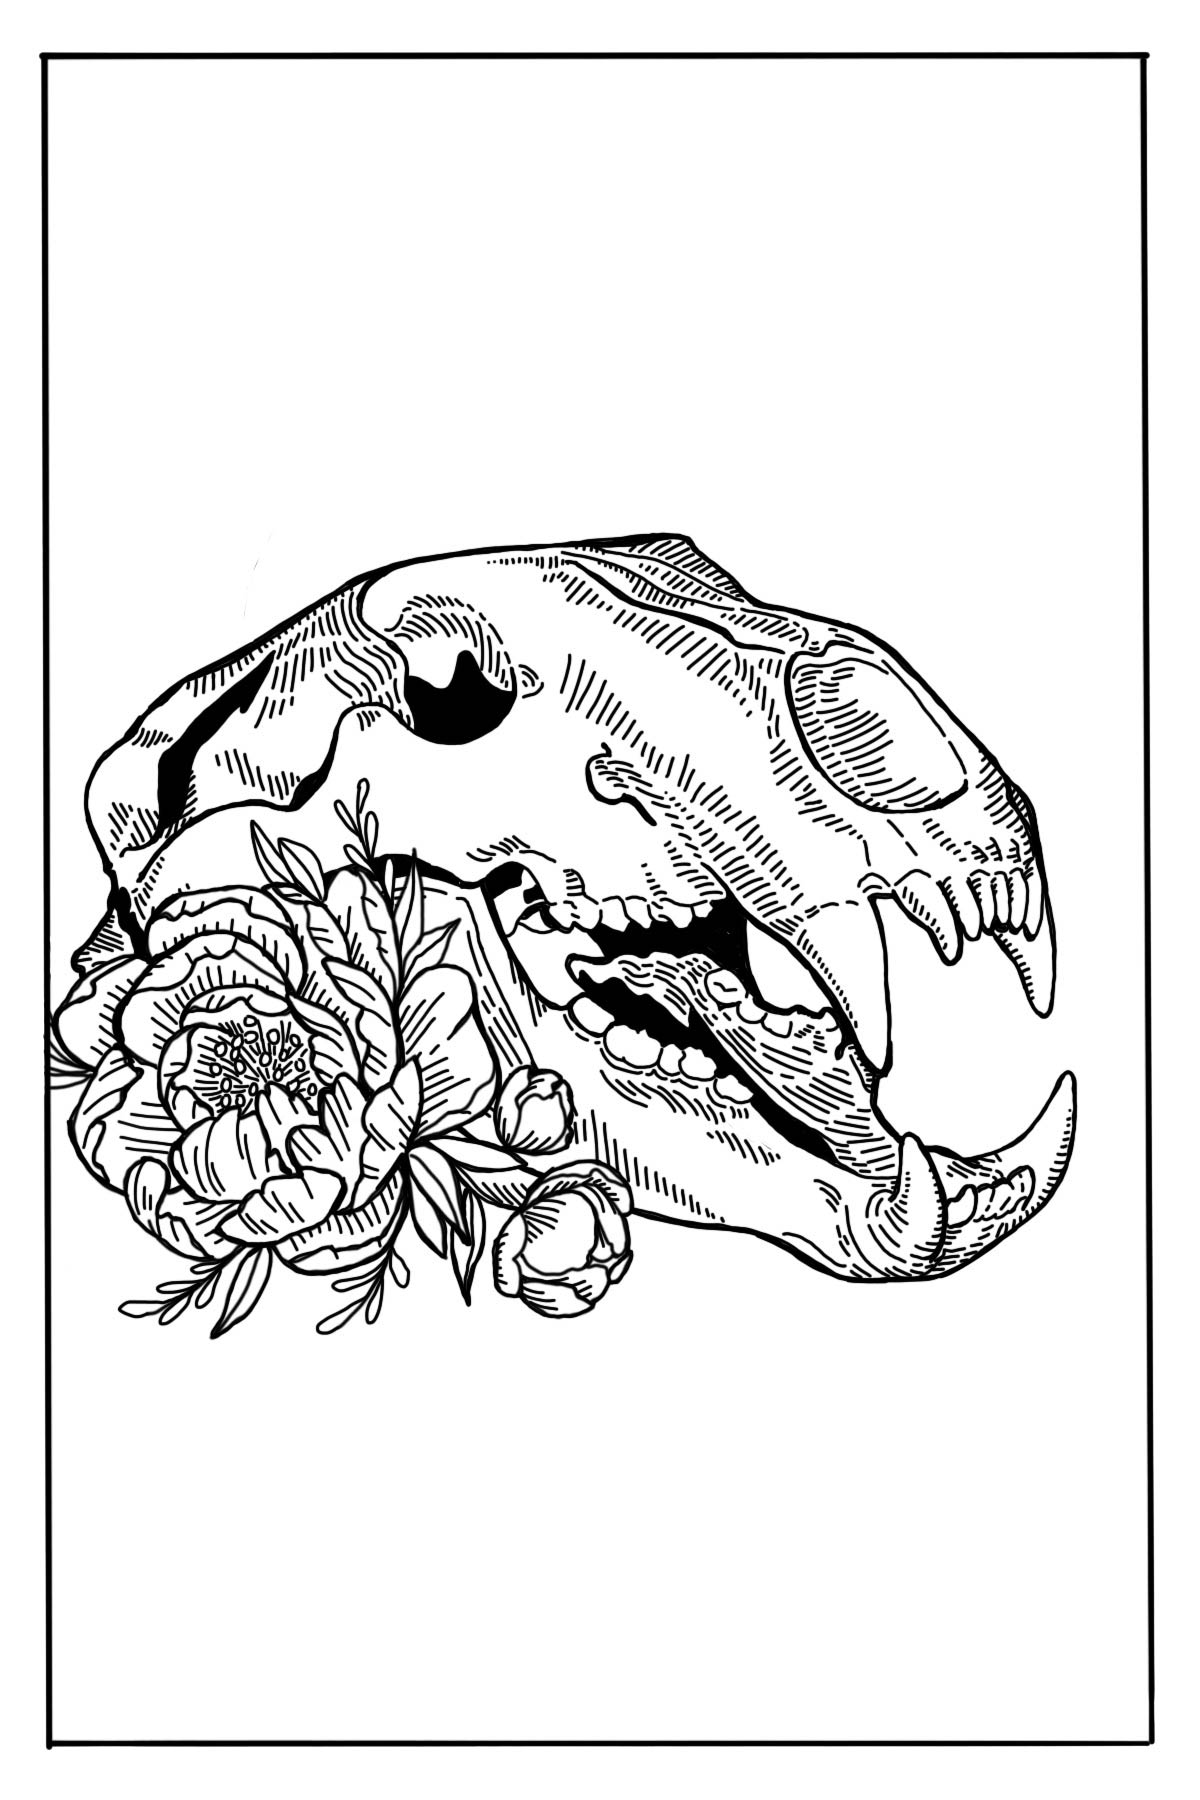 Illustration of a bear skull